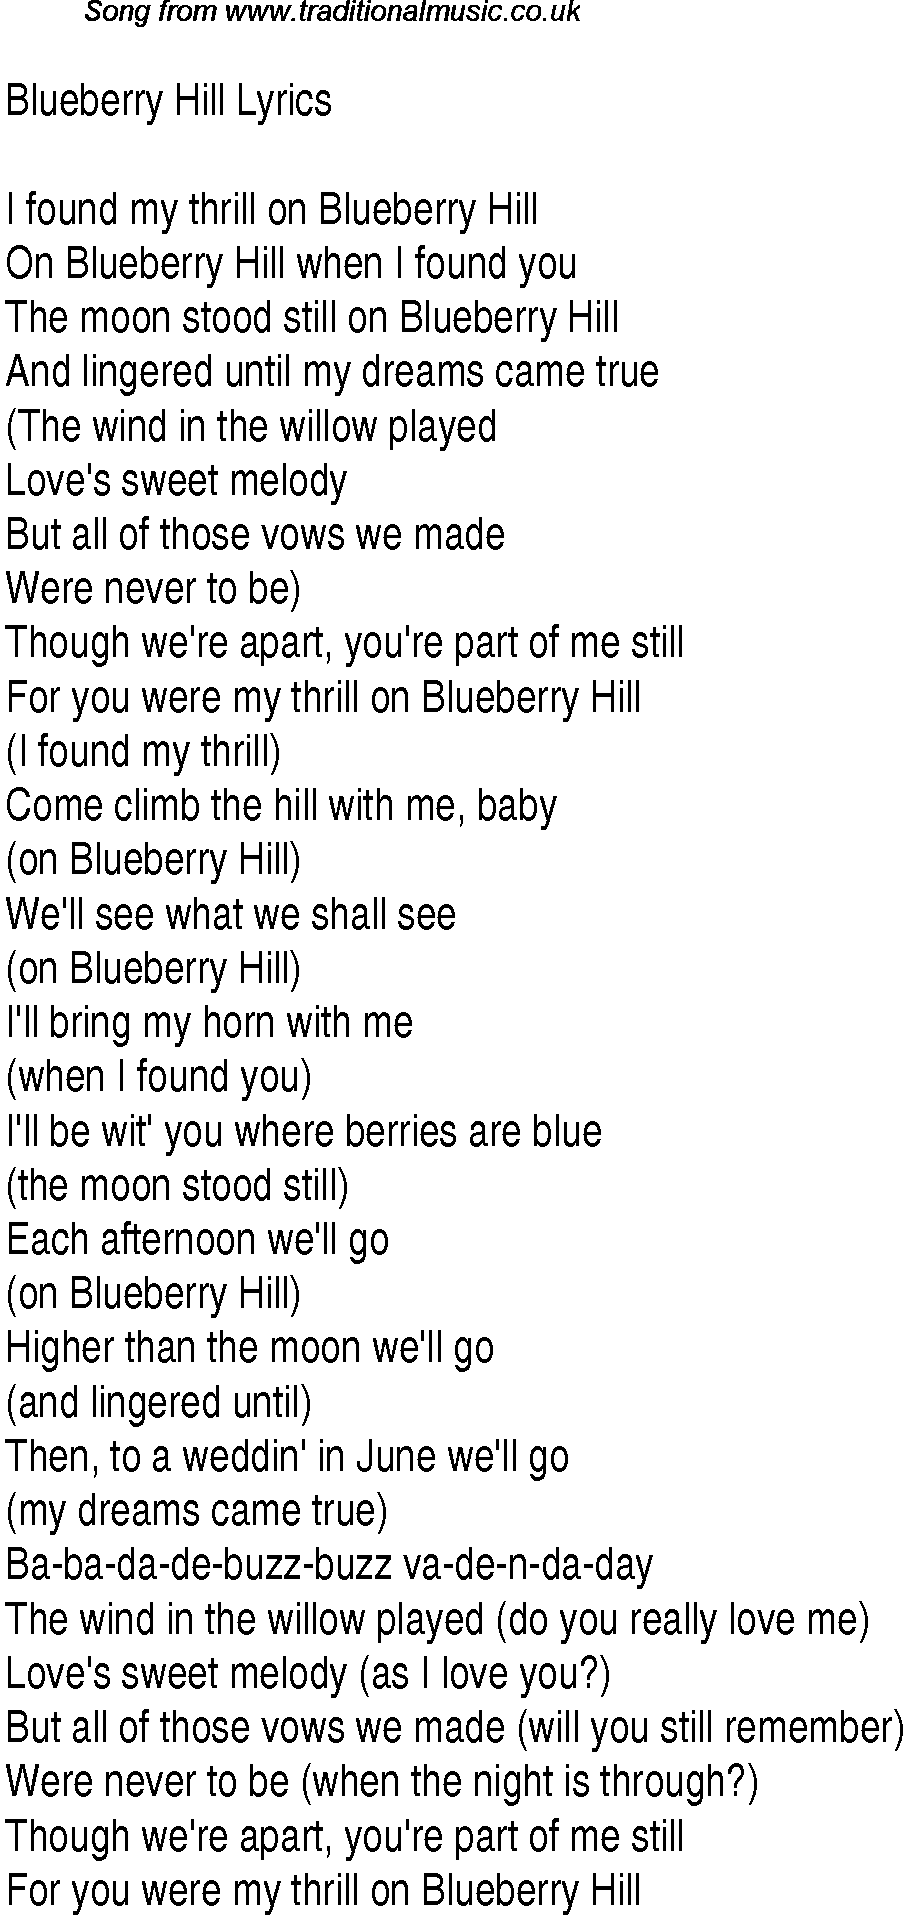 1940s top songs - lyrics for Blueberry Hill(Glen Miller)